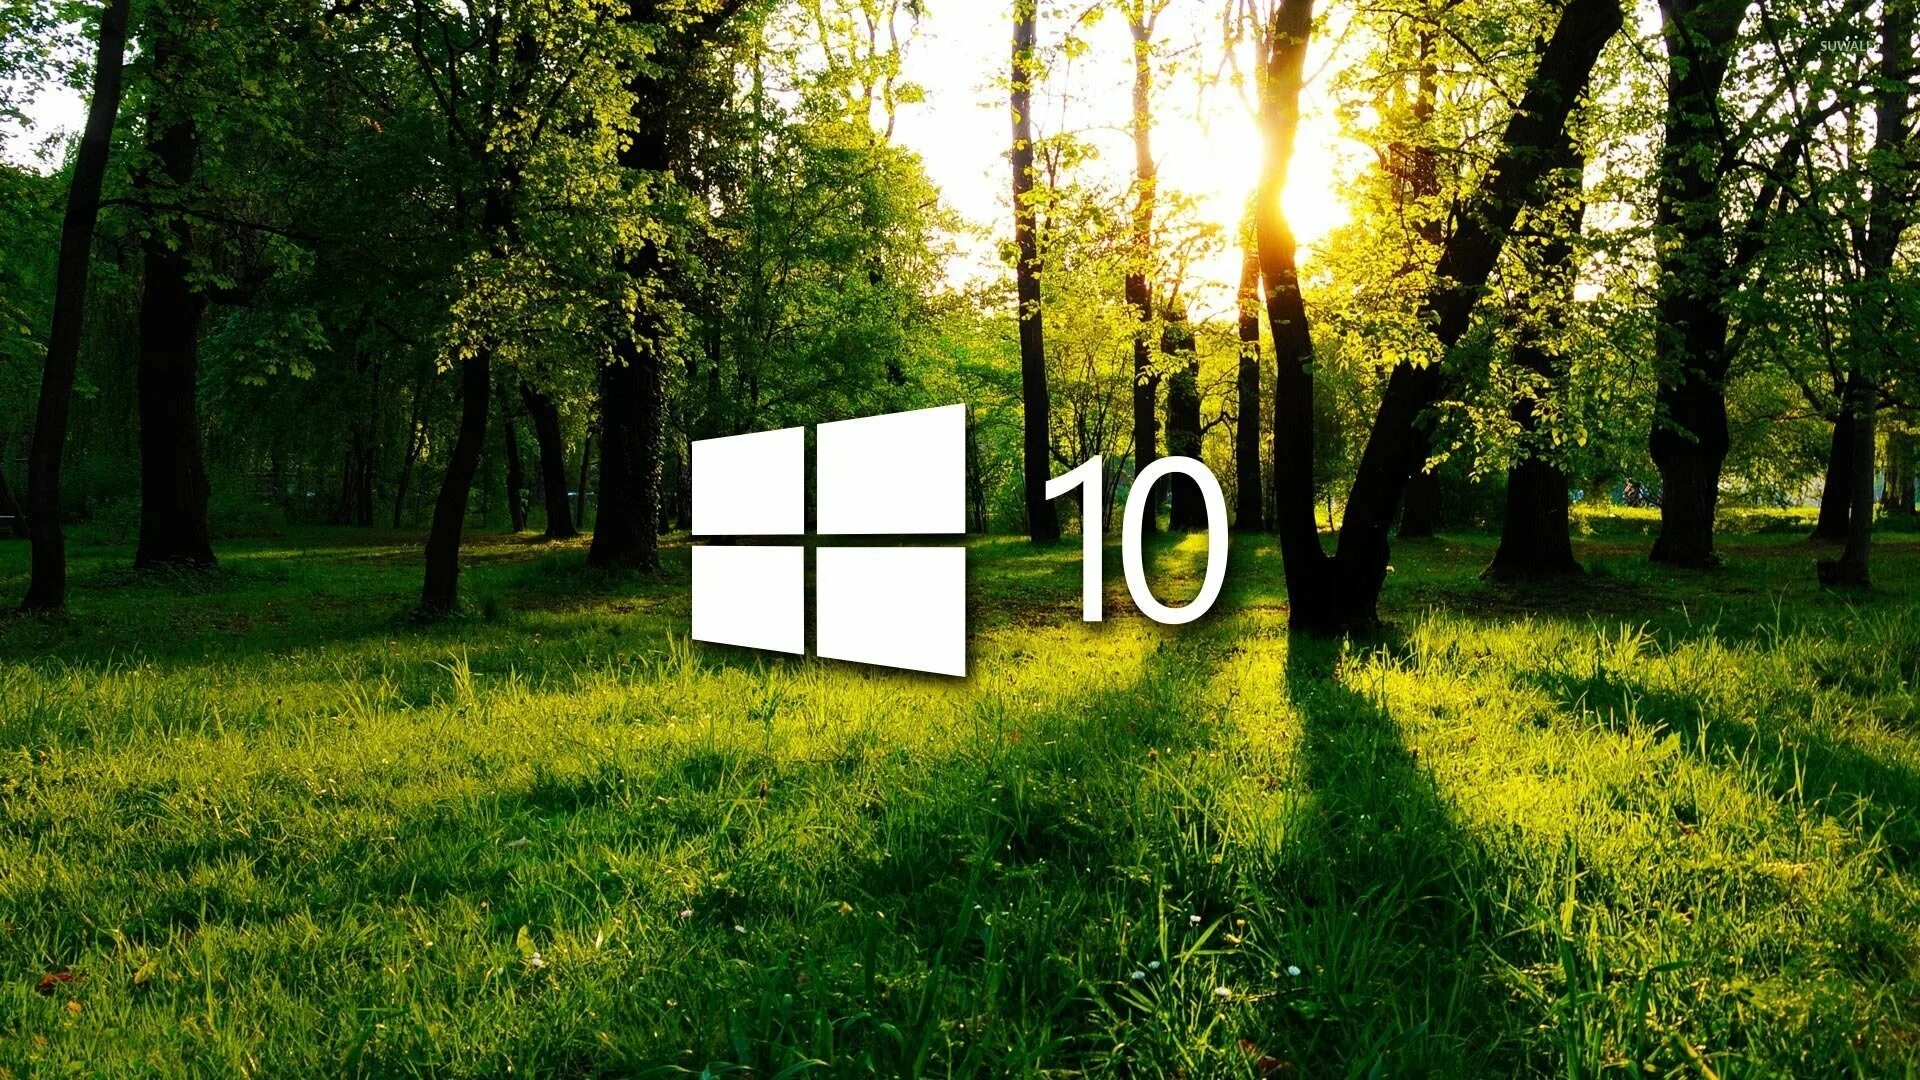 Windows 10 camp. Обои Windows. Обои на рабочий стол Windows 10. Заставка на рабочий стол Windows 10. Фон рабочего стола виндовс 10.